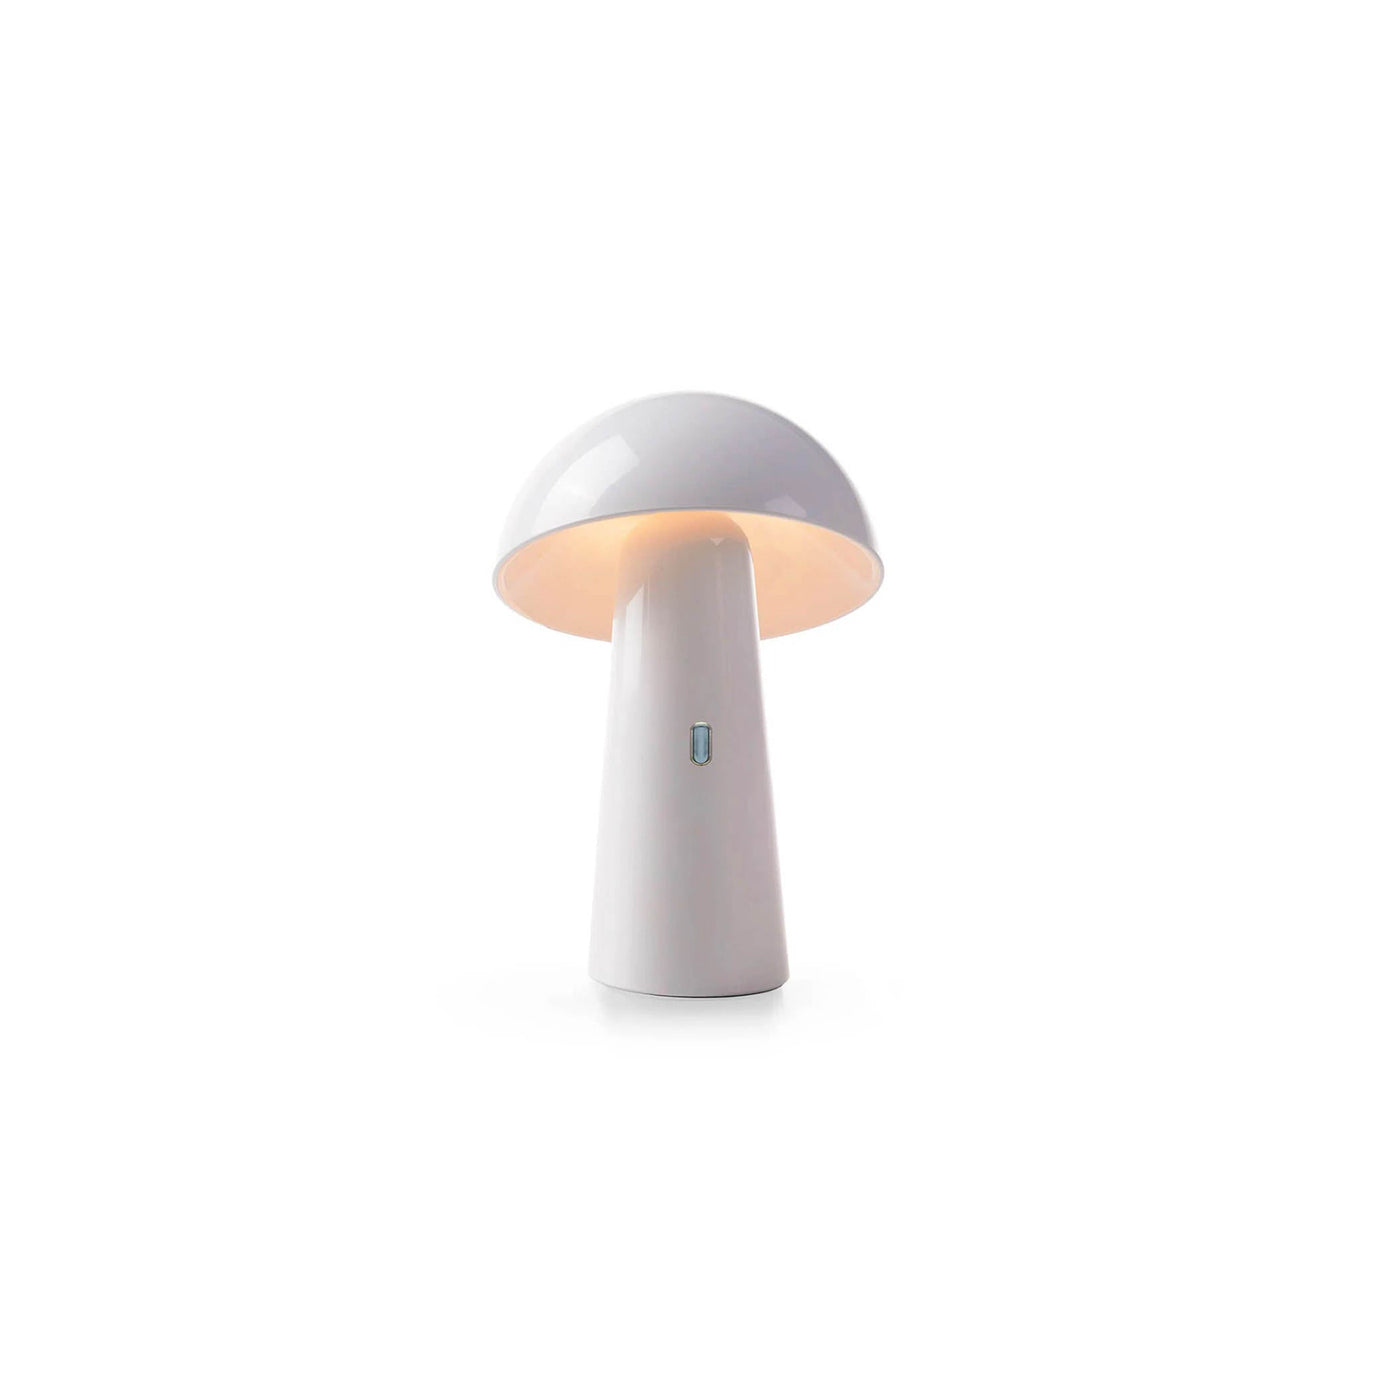 Lampe de table Shitake : pratique, design élégant, autonomie jusqu'à 20 heures, disponible en blanc ou noir pour s'adapter à tous les décors. Blanc.